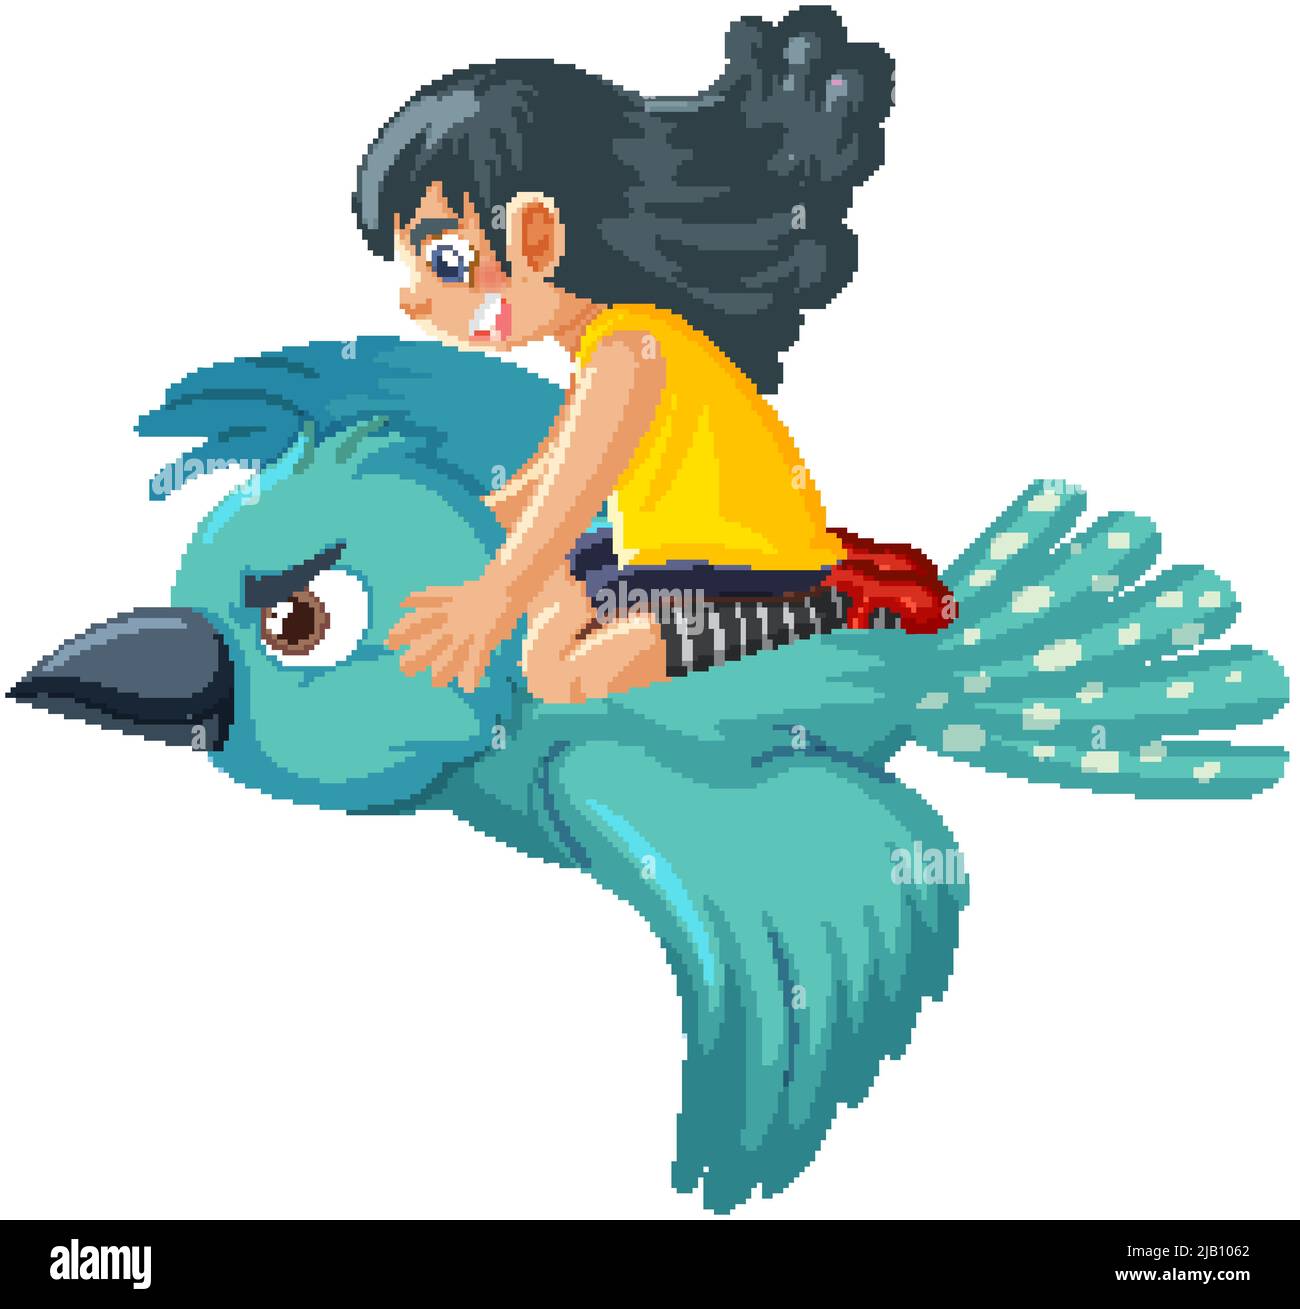 Une jeune fille sur l'illustration de dessin animé d'oiseau Illustration de Vecteur